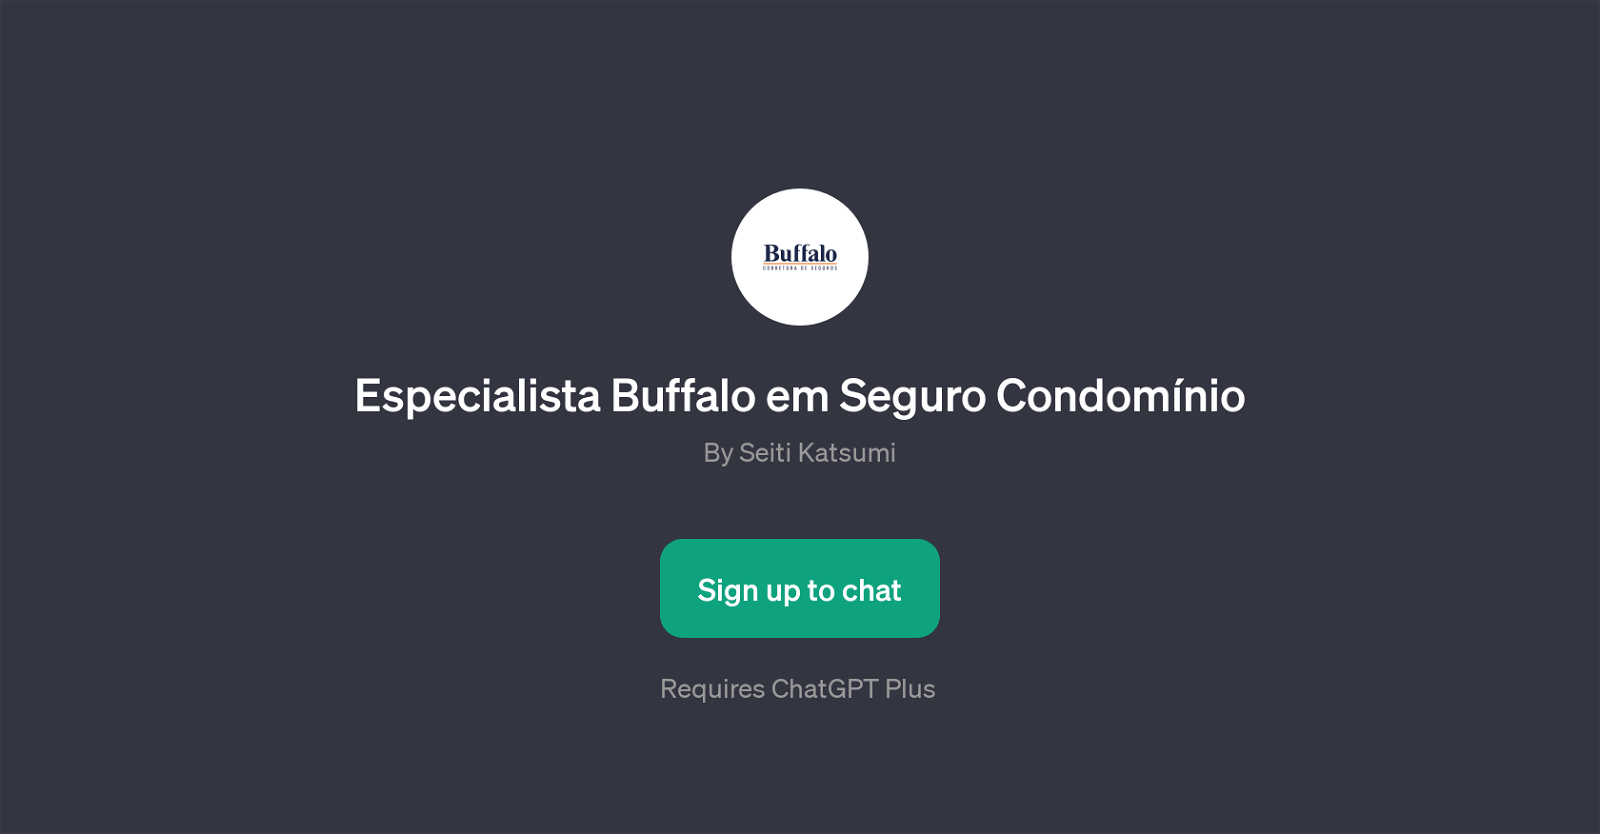 Especialista Buffalo em Seguro Condomnio website